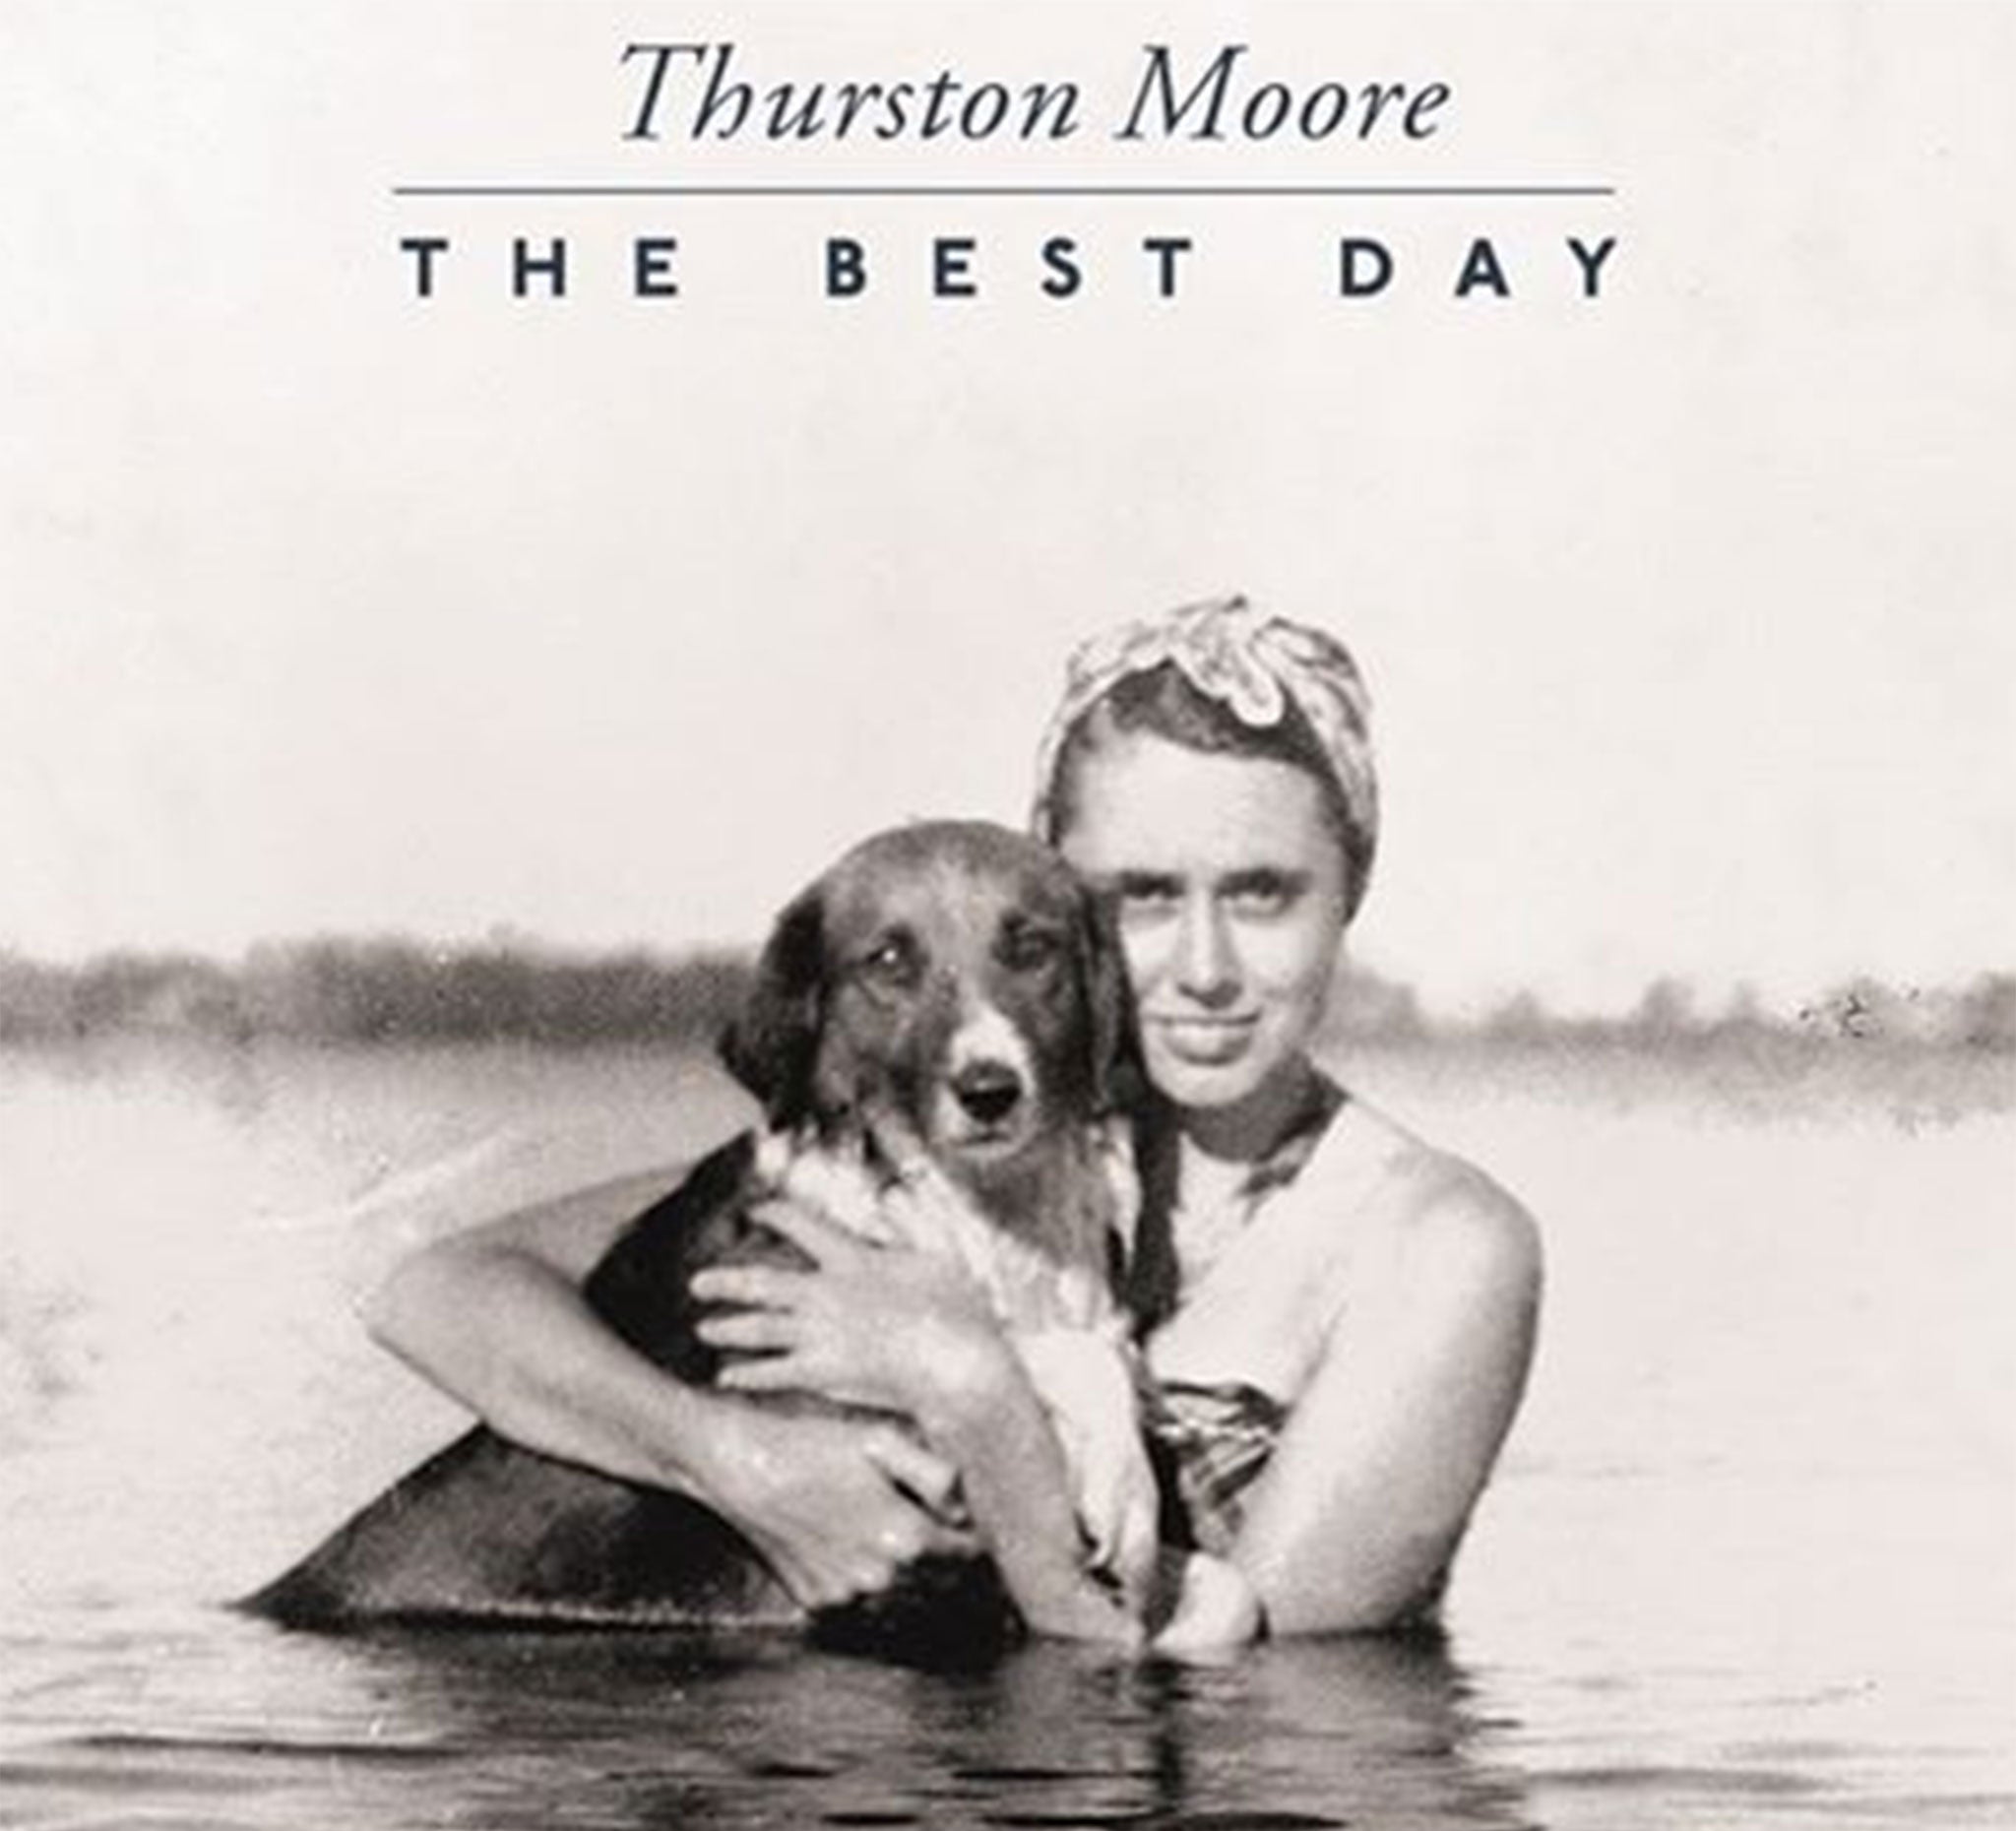 Artwork for Thurston Moore's album The Best Day